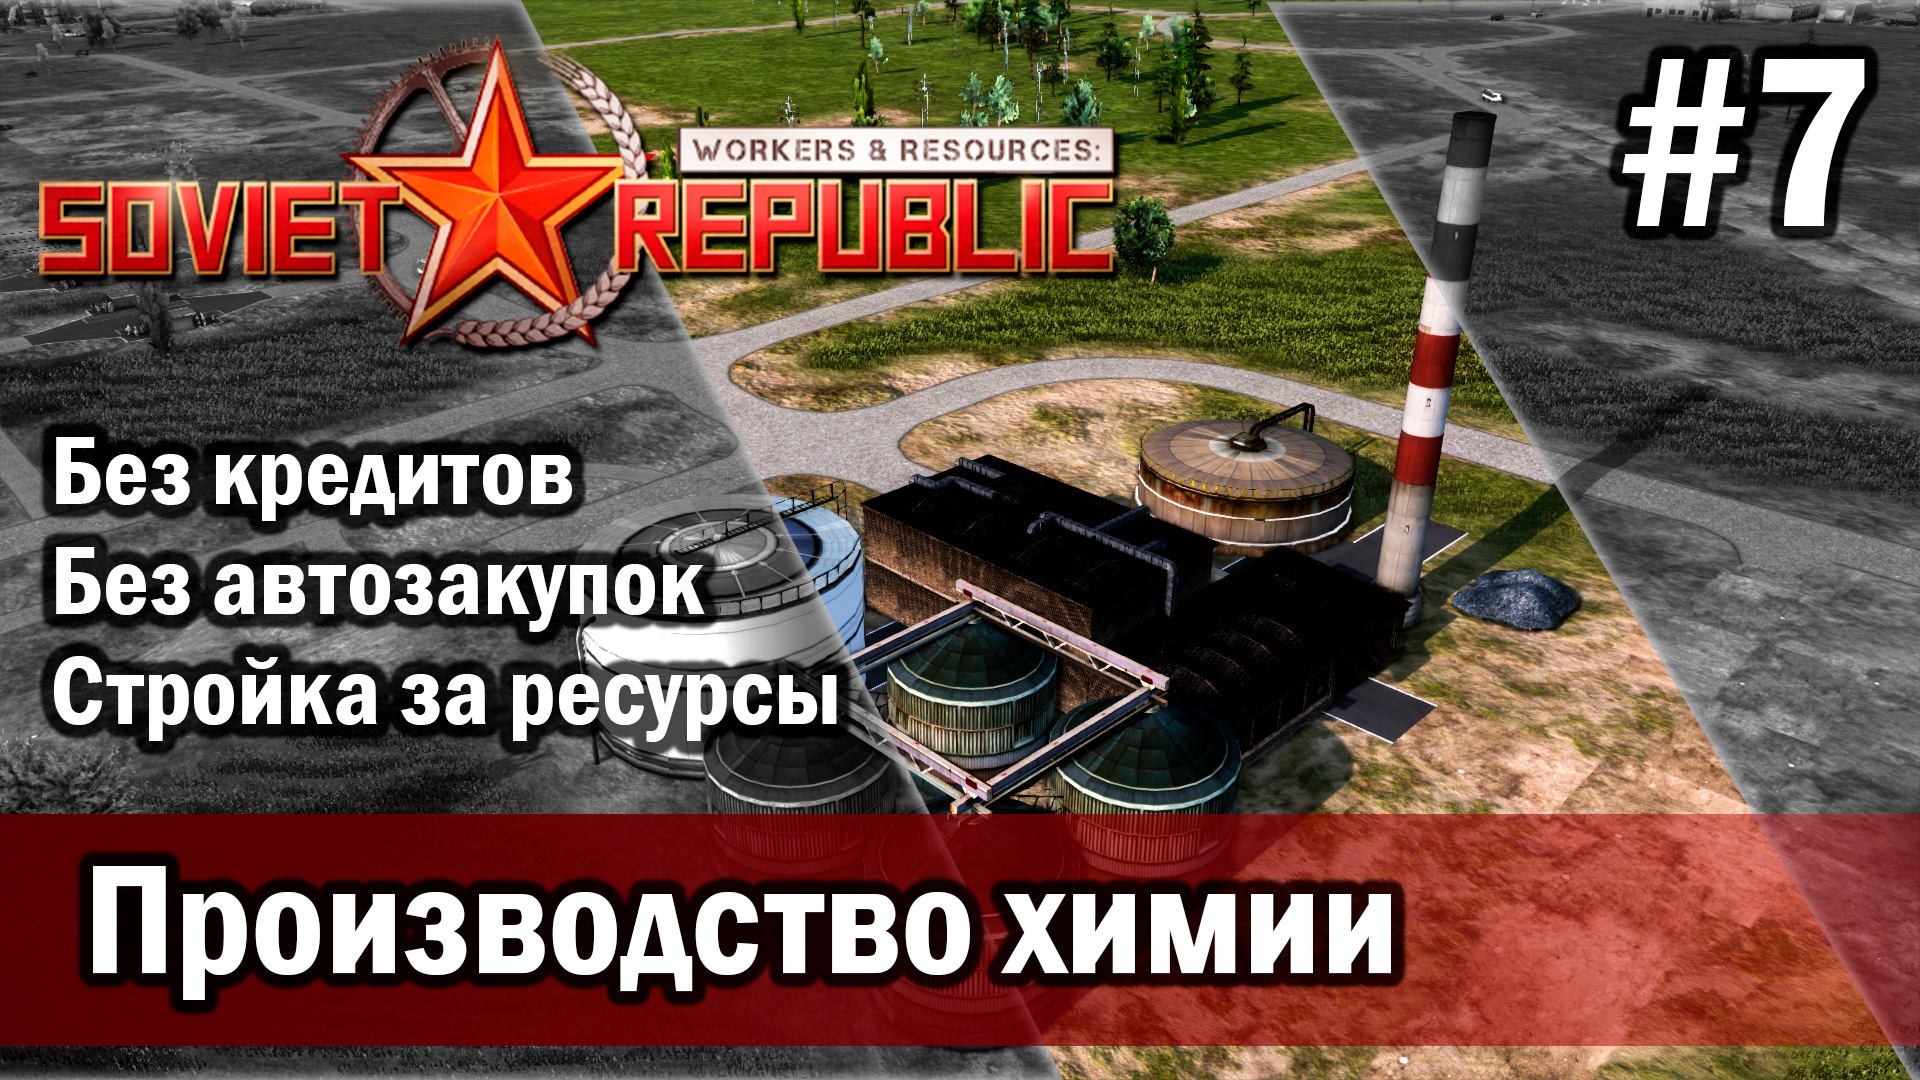 Workers & Resources Soviet Republic на тяжелом 3 сезон 7 серия